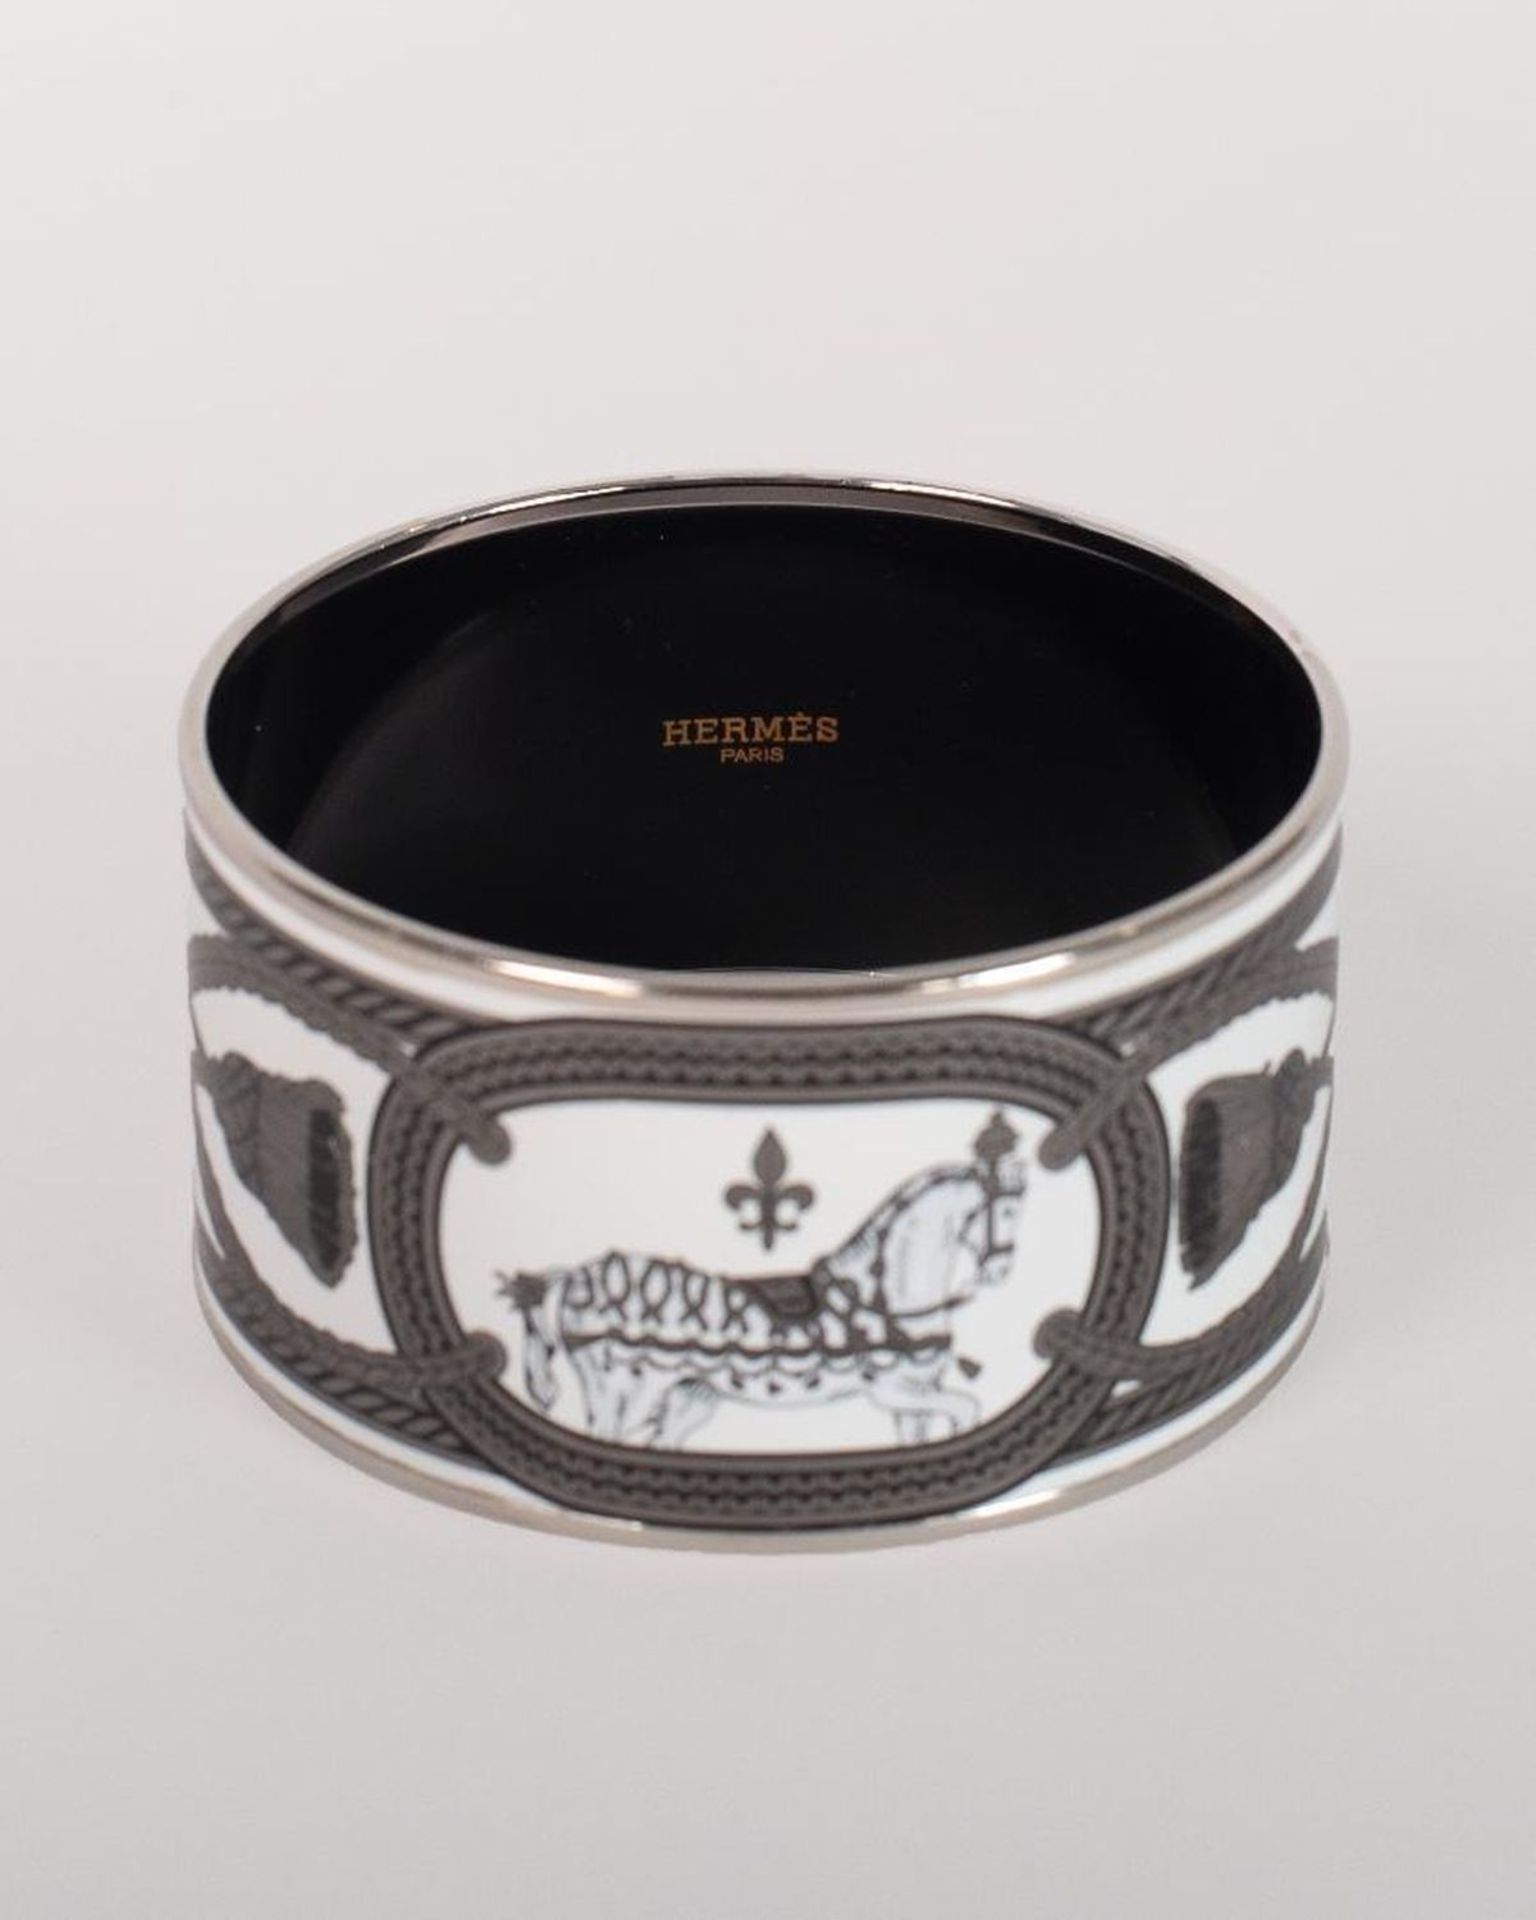 Vintage Hermes Paris Enamel Bangle Bracelet - Image 9 of 11